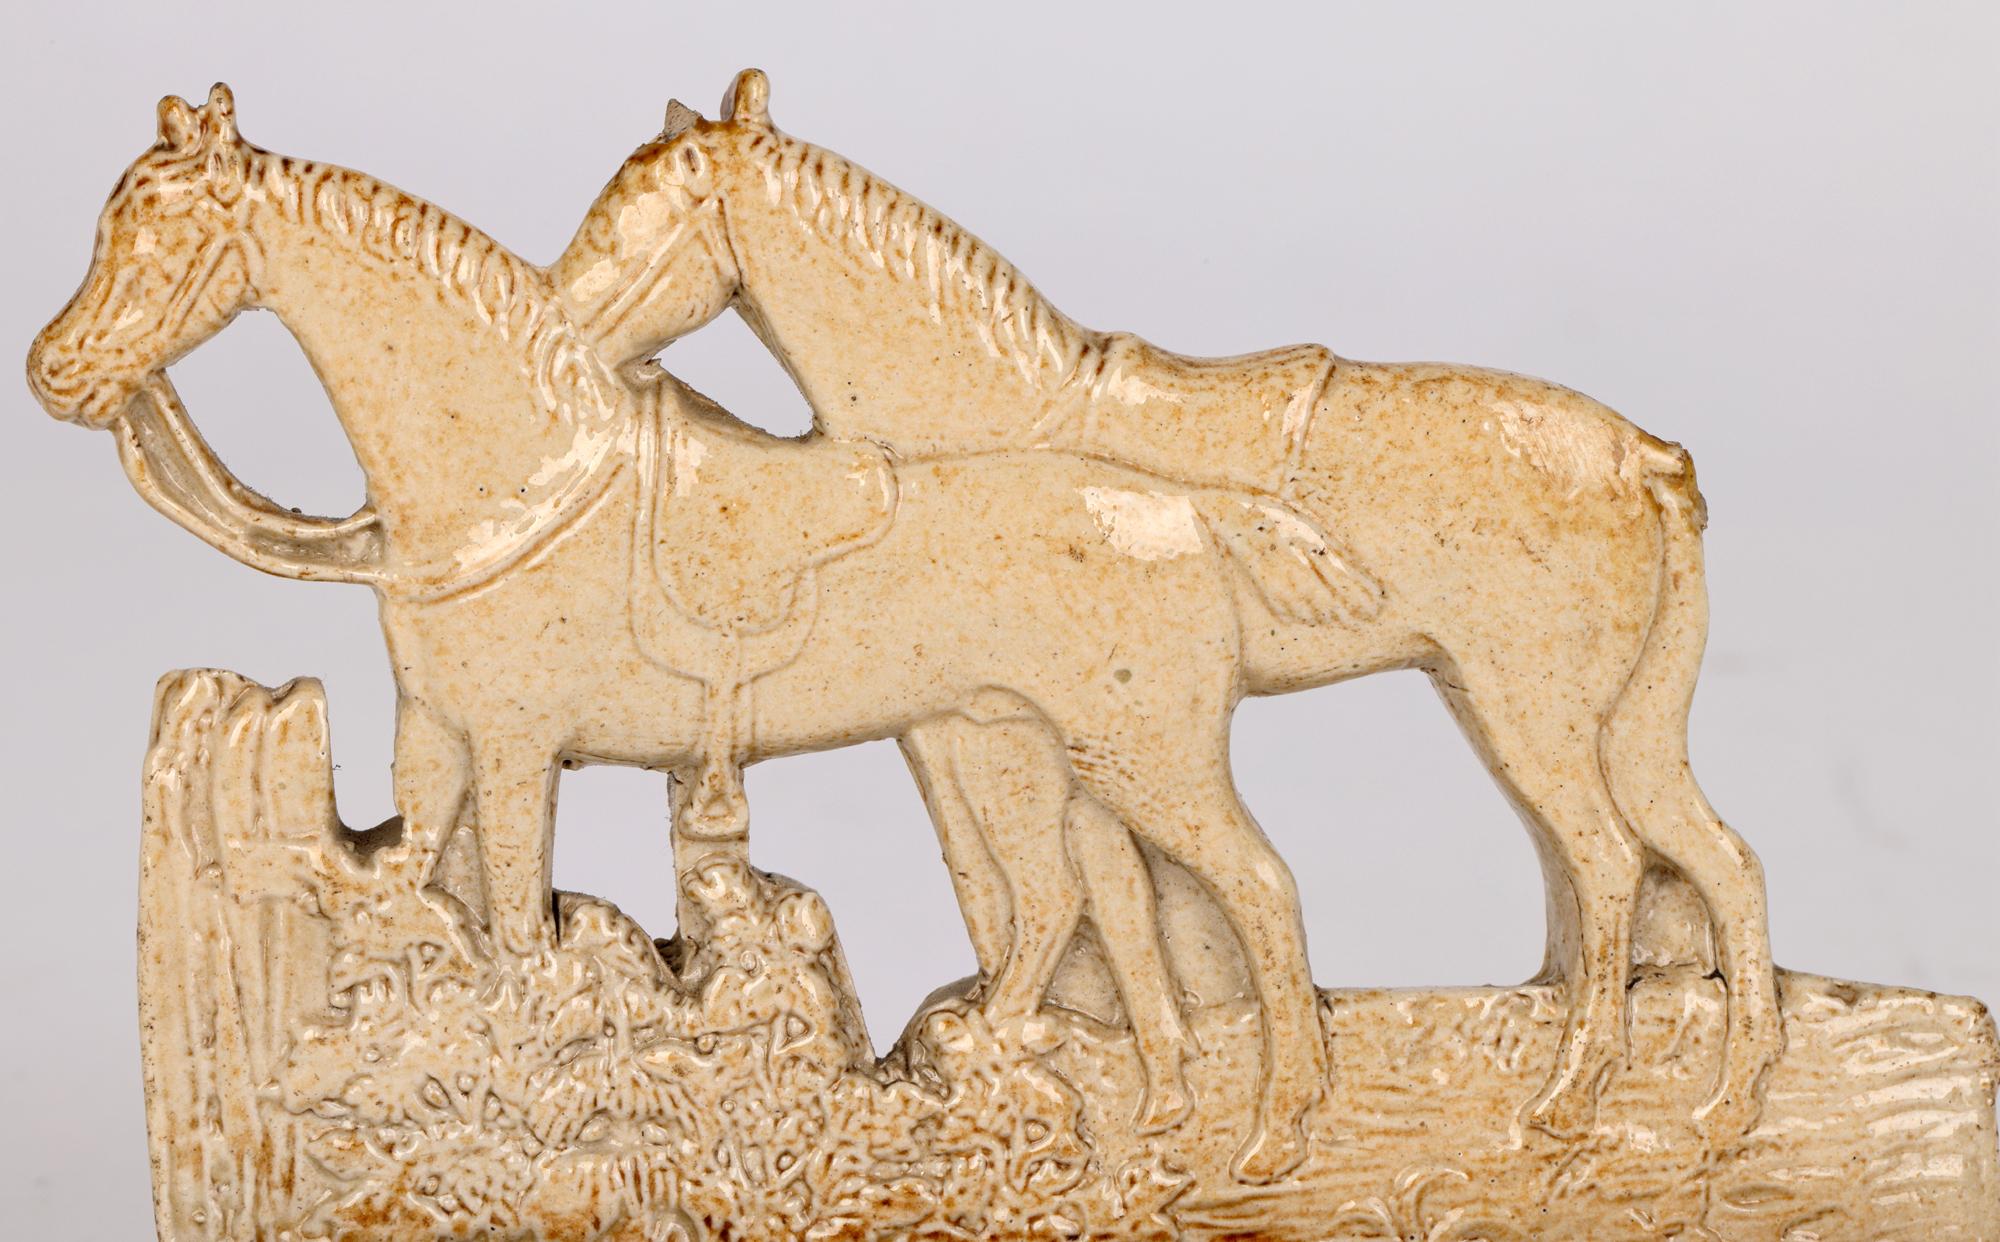 Ein charmantes, ungewöhnliches und seltenes antikes englisches Brampton-Salzglasur-Modell zweier gesattelter Pferde aus den Jahren um 1830/40. Das Modell aus Steingut zeigt die eng nebeneinander stehenden Pferde, die auf einem massiven rechteckigen